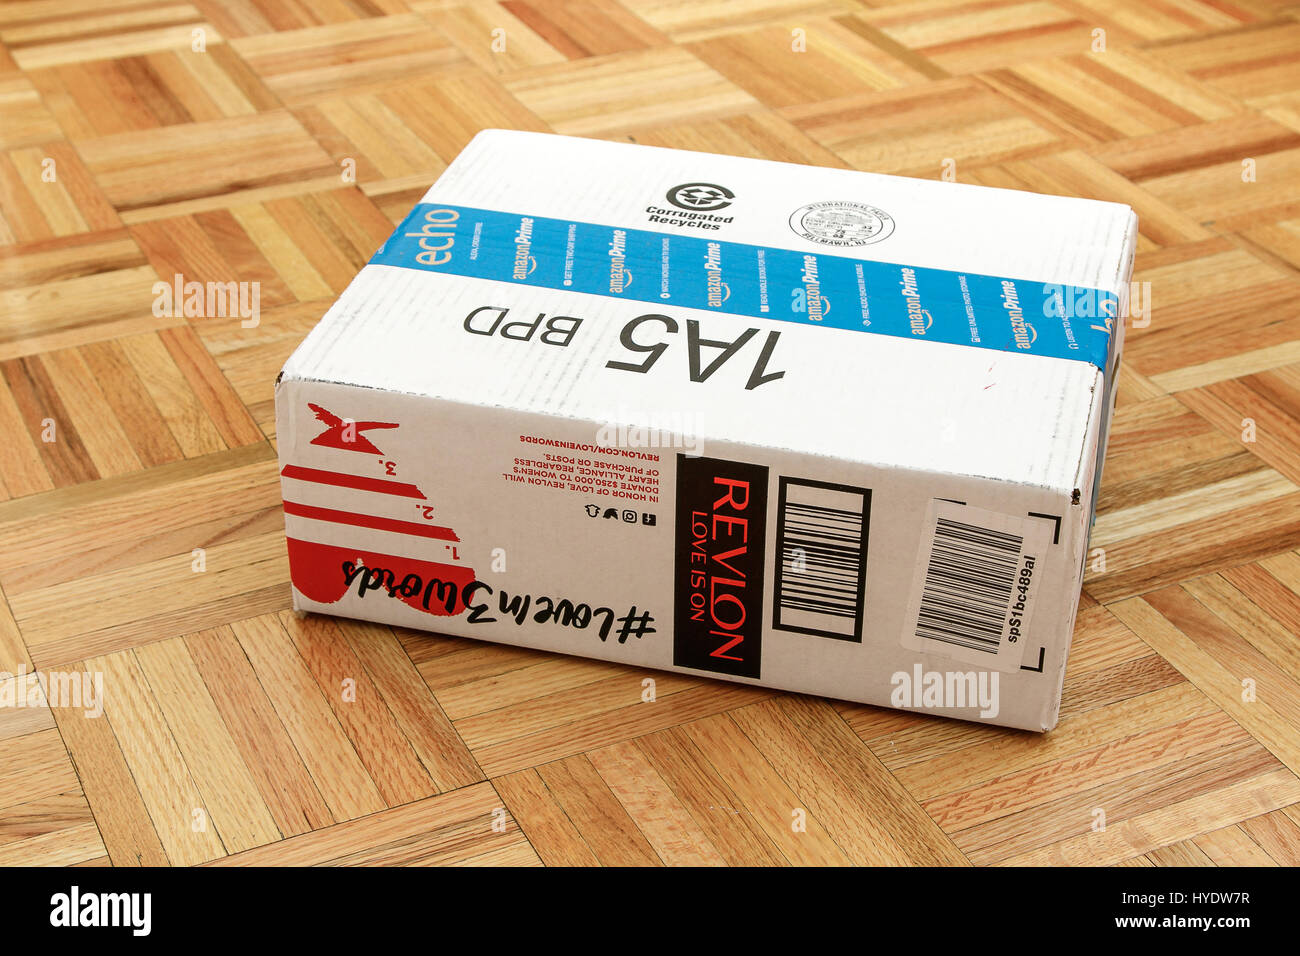 Amazon Verpackung Karton liegt auf einem Parkettboden Stockfotografie -  Alamy